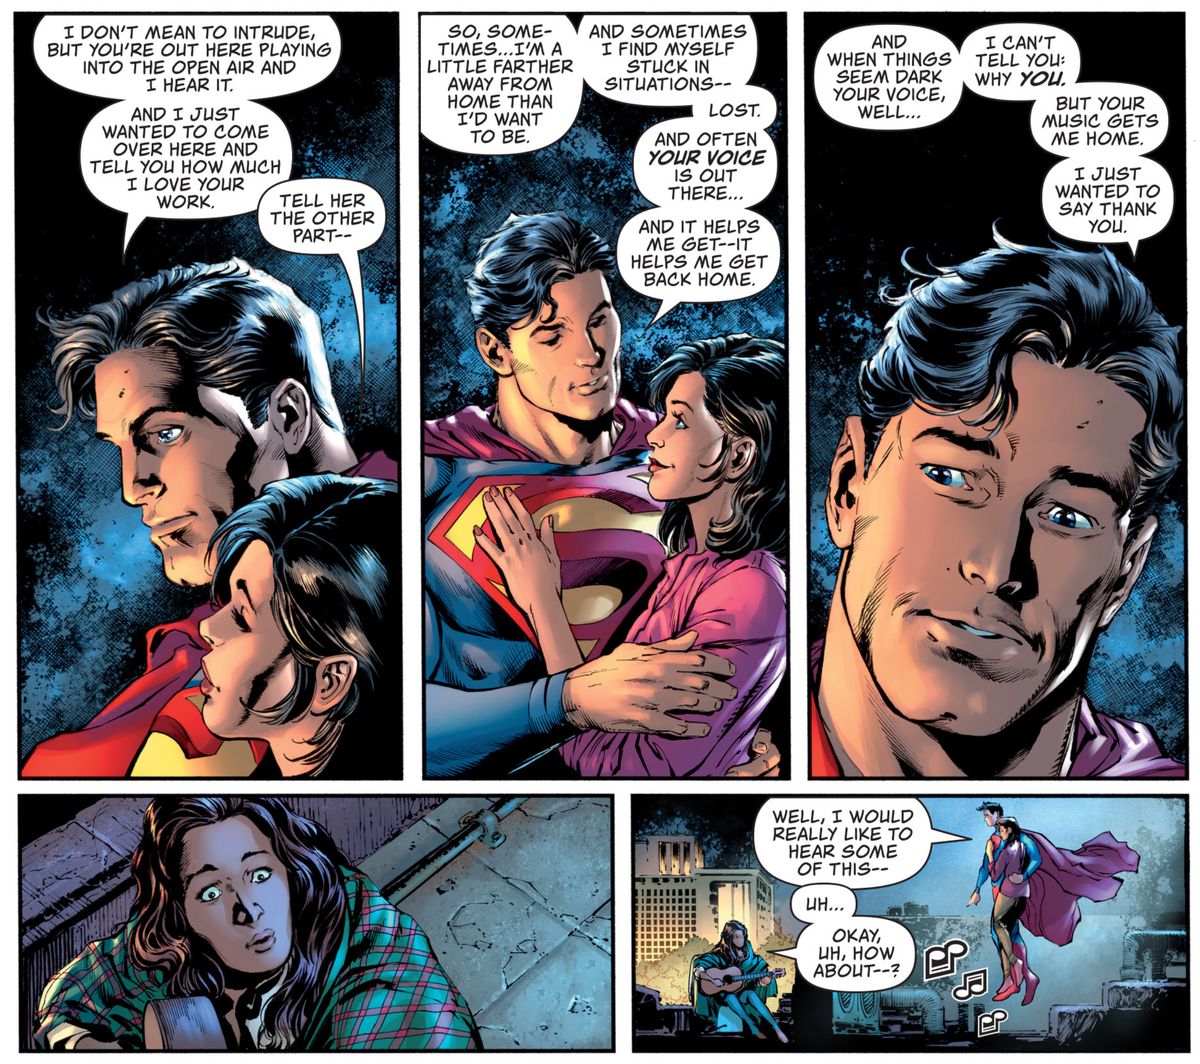 Superman och Lois Lane besöker en kvinna som spelar gitarr på taket på Metropolis.  Superman säger till henne att han ofta kan höra henne med sin superhörning, och att hennes spel har hjälpt honom.  ”Ibland hamnar jag fast i situationer - förlorade.  Och ofta är din röst där ute ... och det hjälper mig att komma - det hjälper mig att komma hem igen, ”i Superman # 28, DC Comics (2020). 